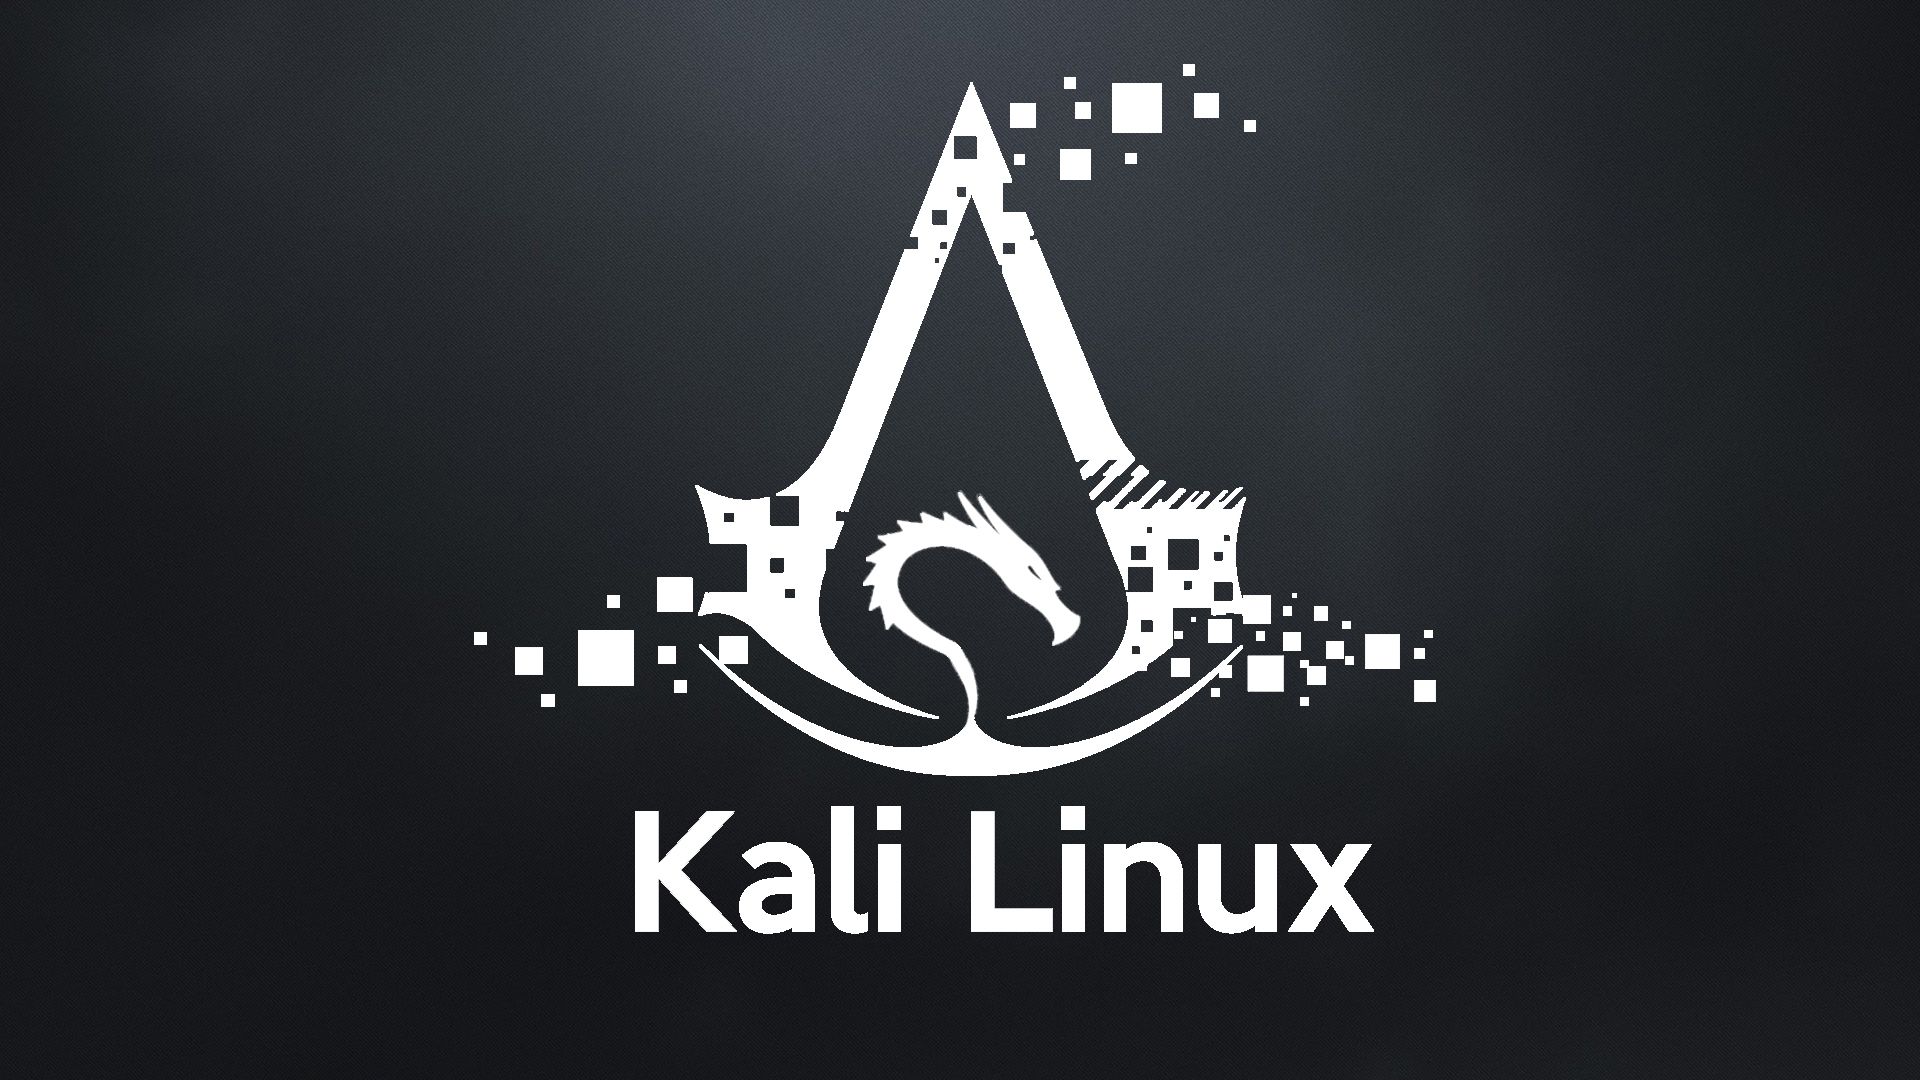 Hình nền độ phân giải cao Kali Linux: Bạn là người khó tính về độ phân giải hình ảnh? Chọn ngay những hình nền độ phân giải cao trên Kali Linux để khám phá mọi chi tiết với độ sắc nét tuyệt vời!